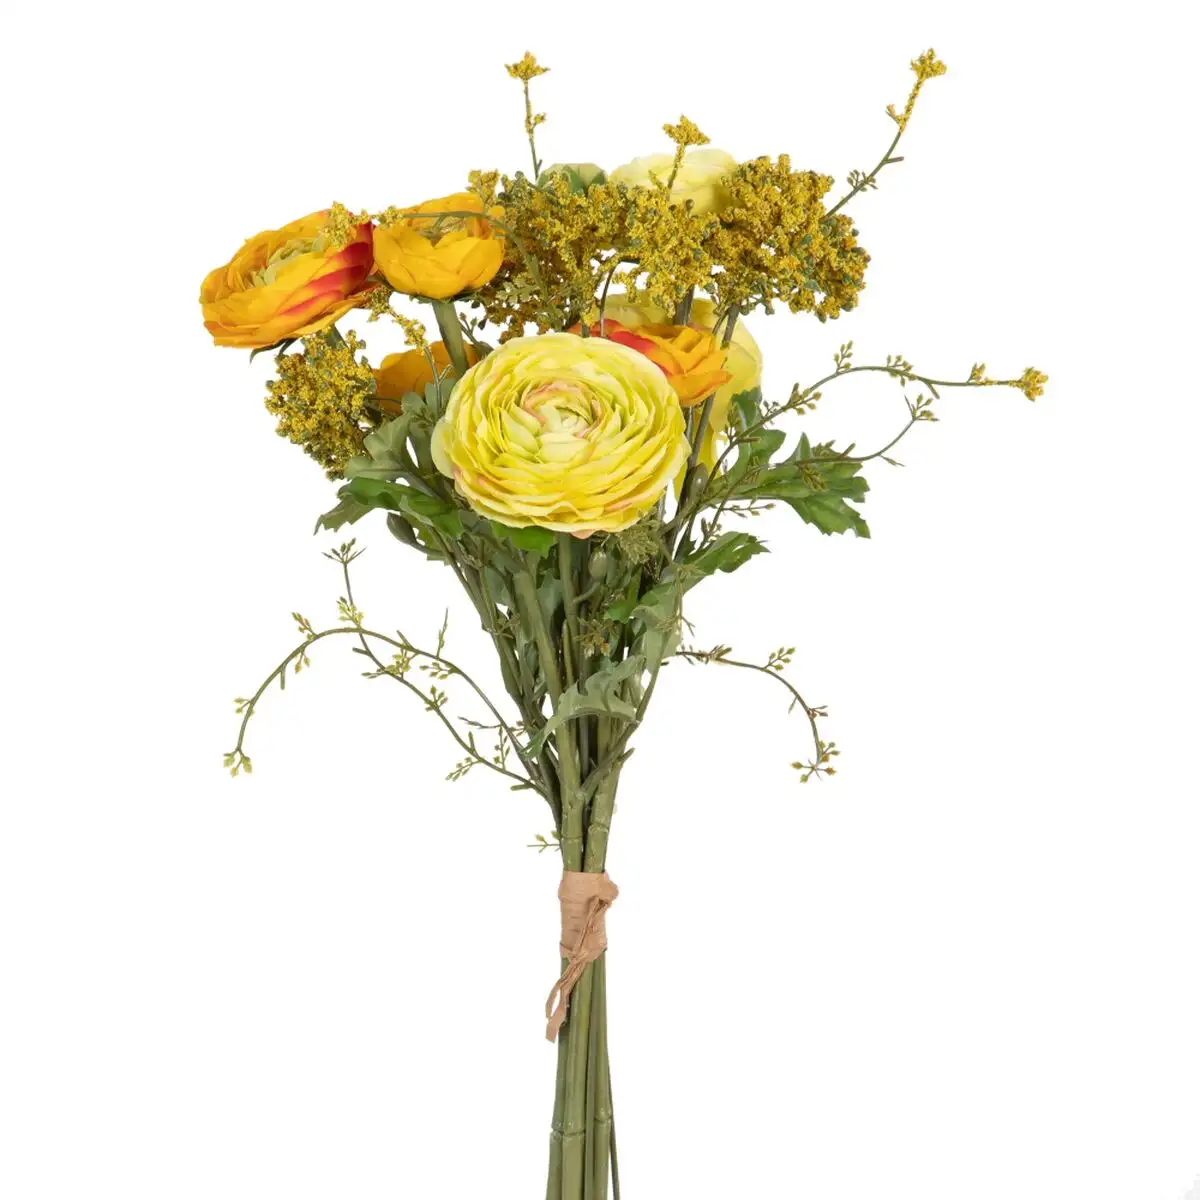 Fleurs decoratives orange 20 x 20 x 50 cm_7035. DIAYTAR SENEGAL - Votre Portail Vers l'Exclusivité. Explorez notre boutique en ligne pour découvrir des produits uniques et raffinés, conçus pour ceux qui recherchent l'excellence.